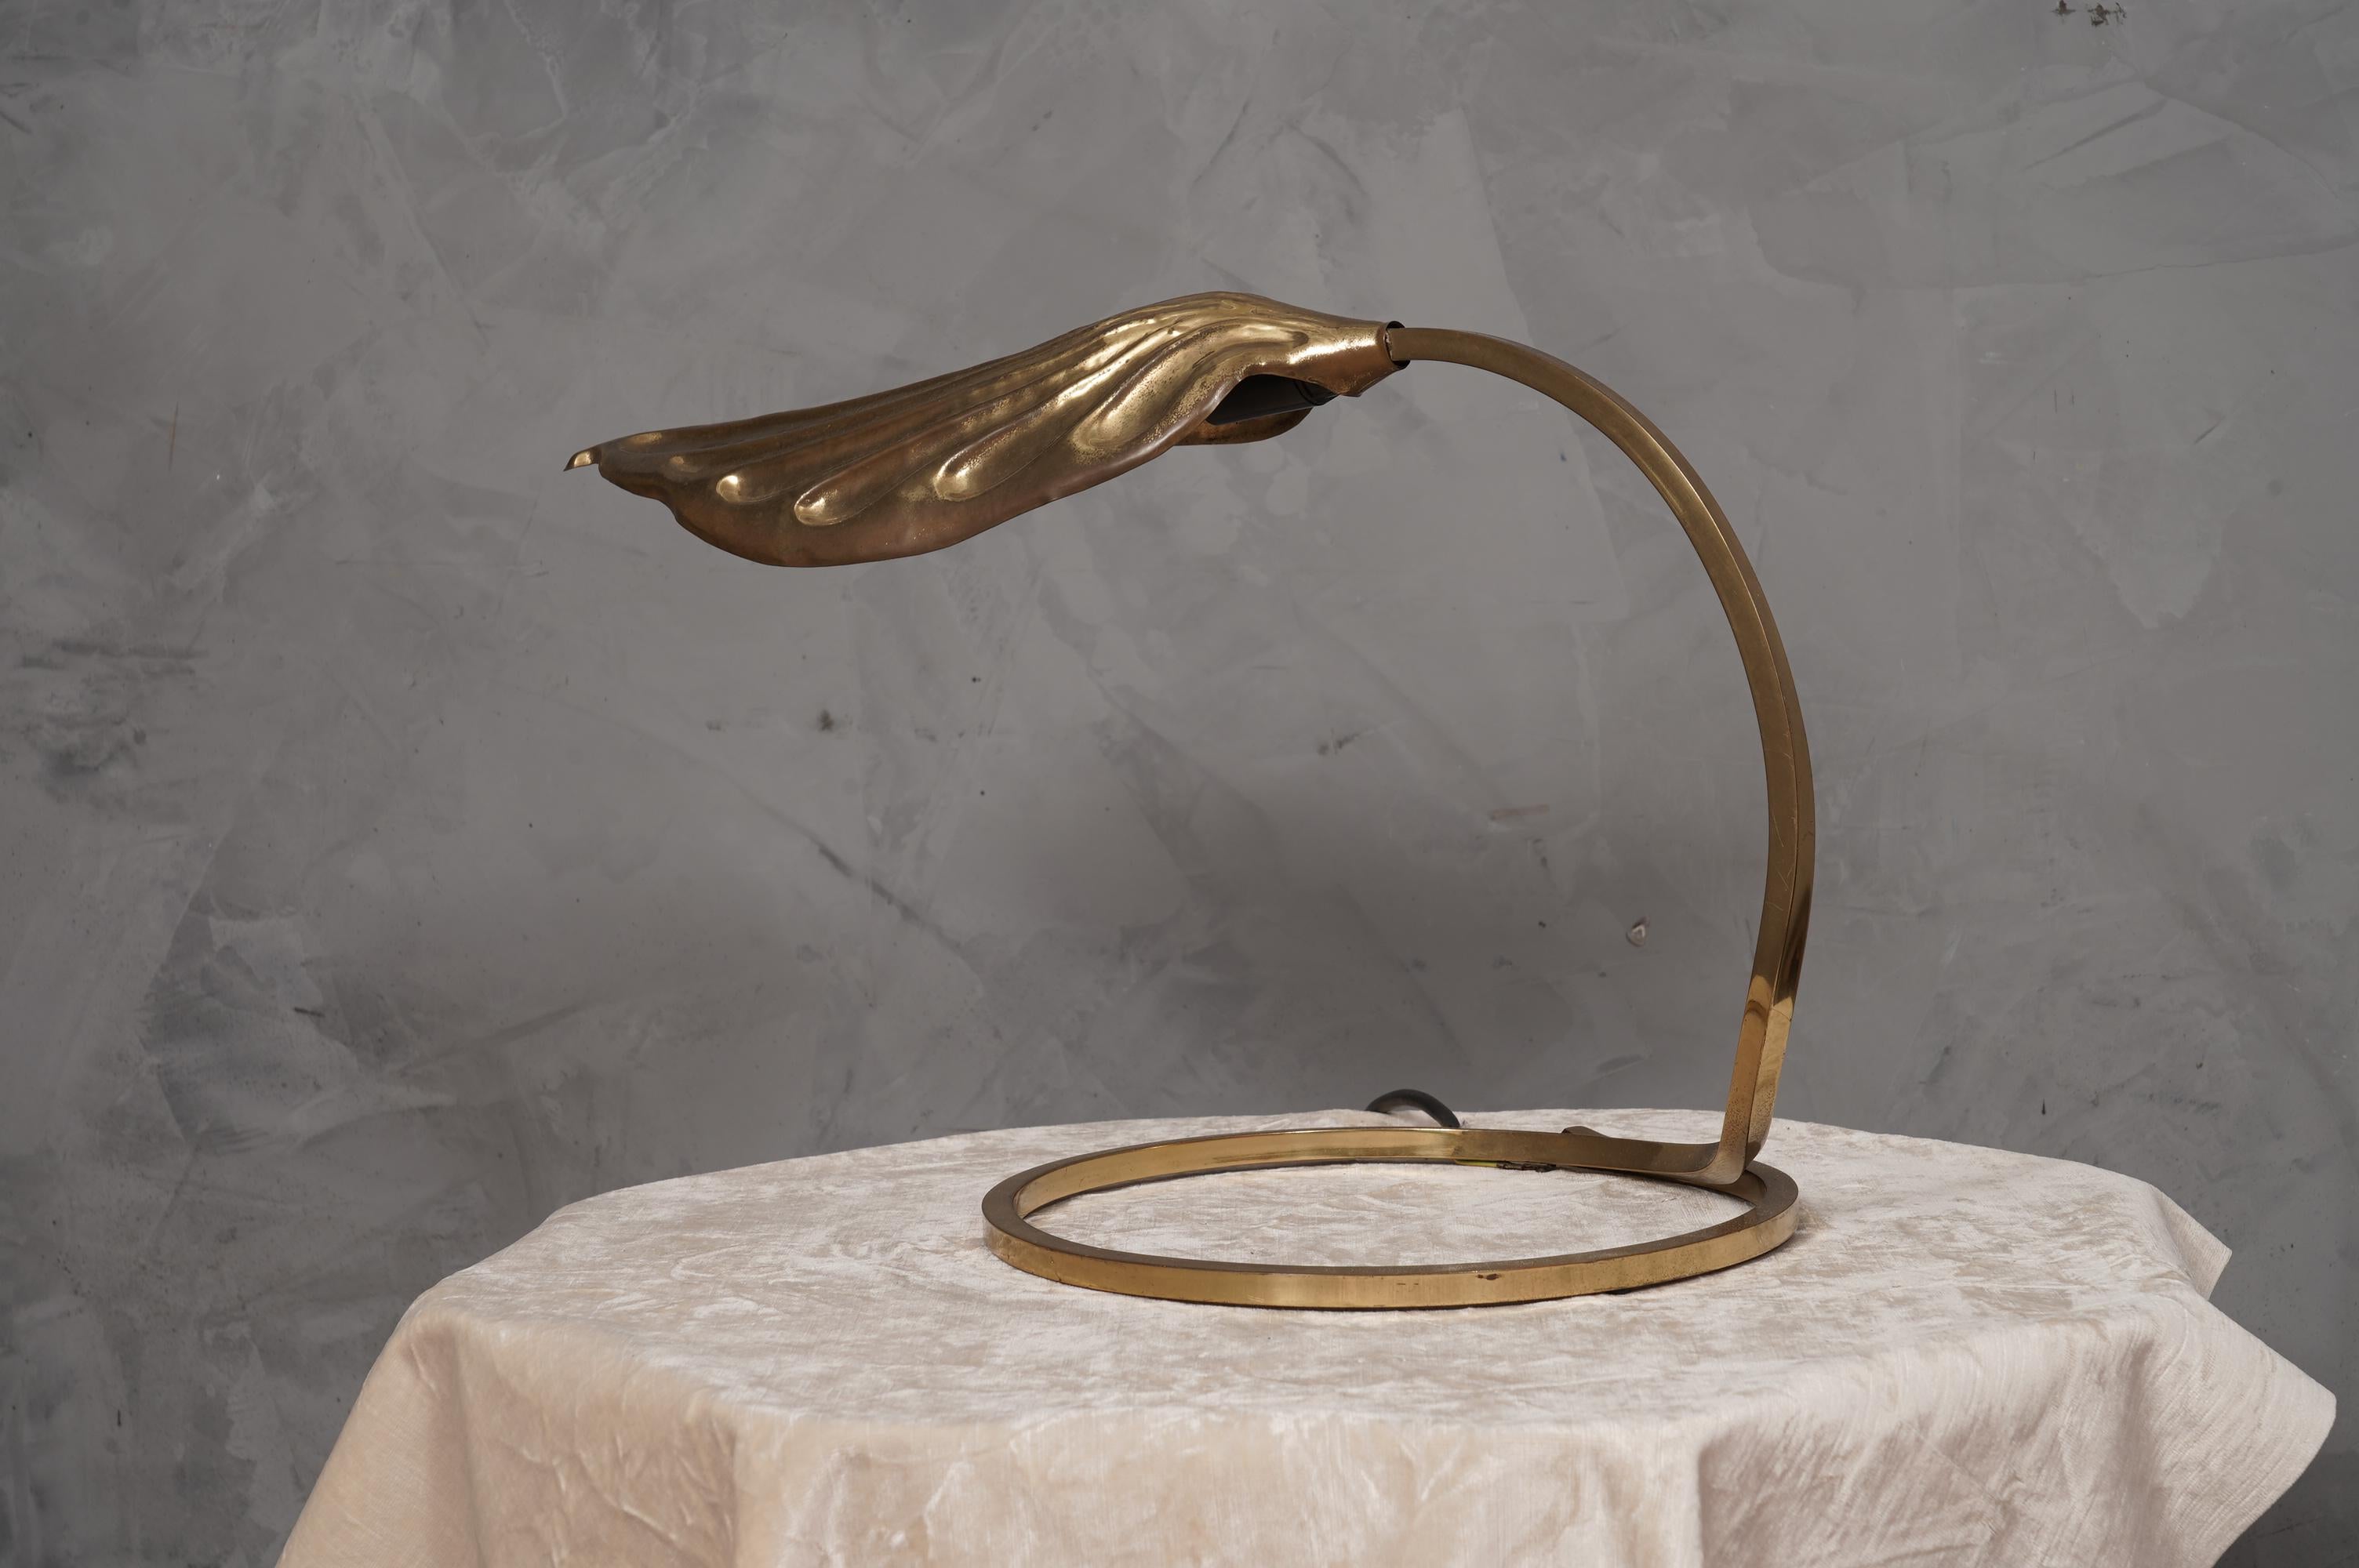 Stupenda lampada di Tommaso Barbi, design inconfondibile nel suo stile italiano del periodo degli anni '70. Una lavorazione dei metalli molto raffinata, artigiani d'altri tempi.

La lampada è composta da un tubo di ottone di diametro quadrato che fa